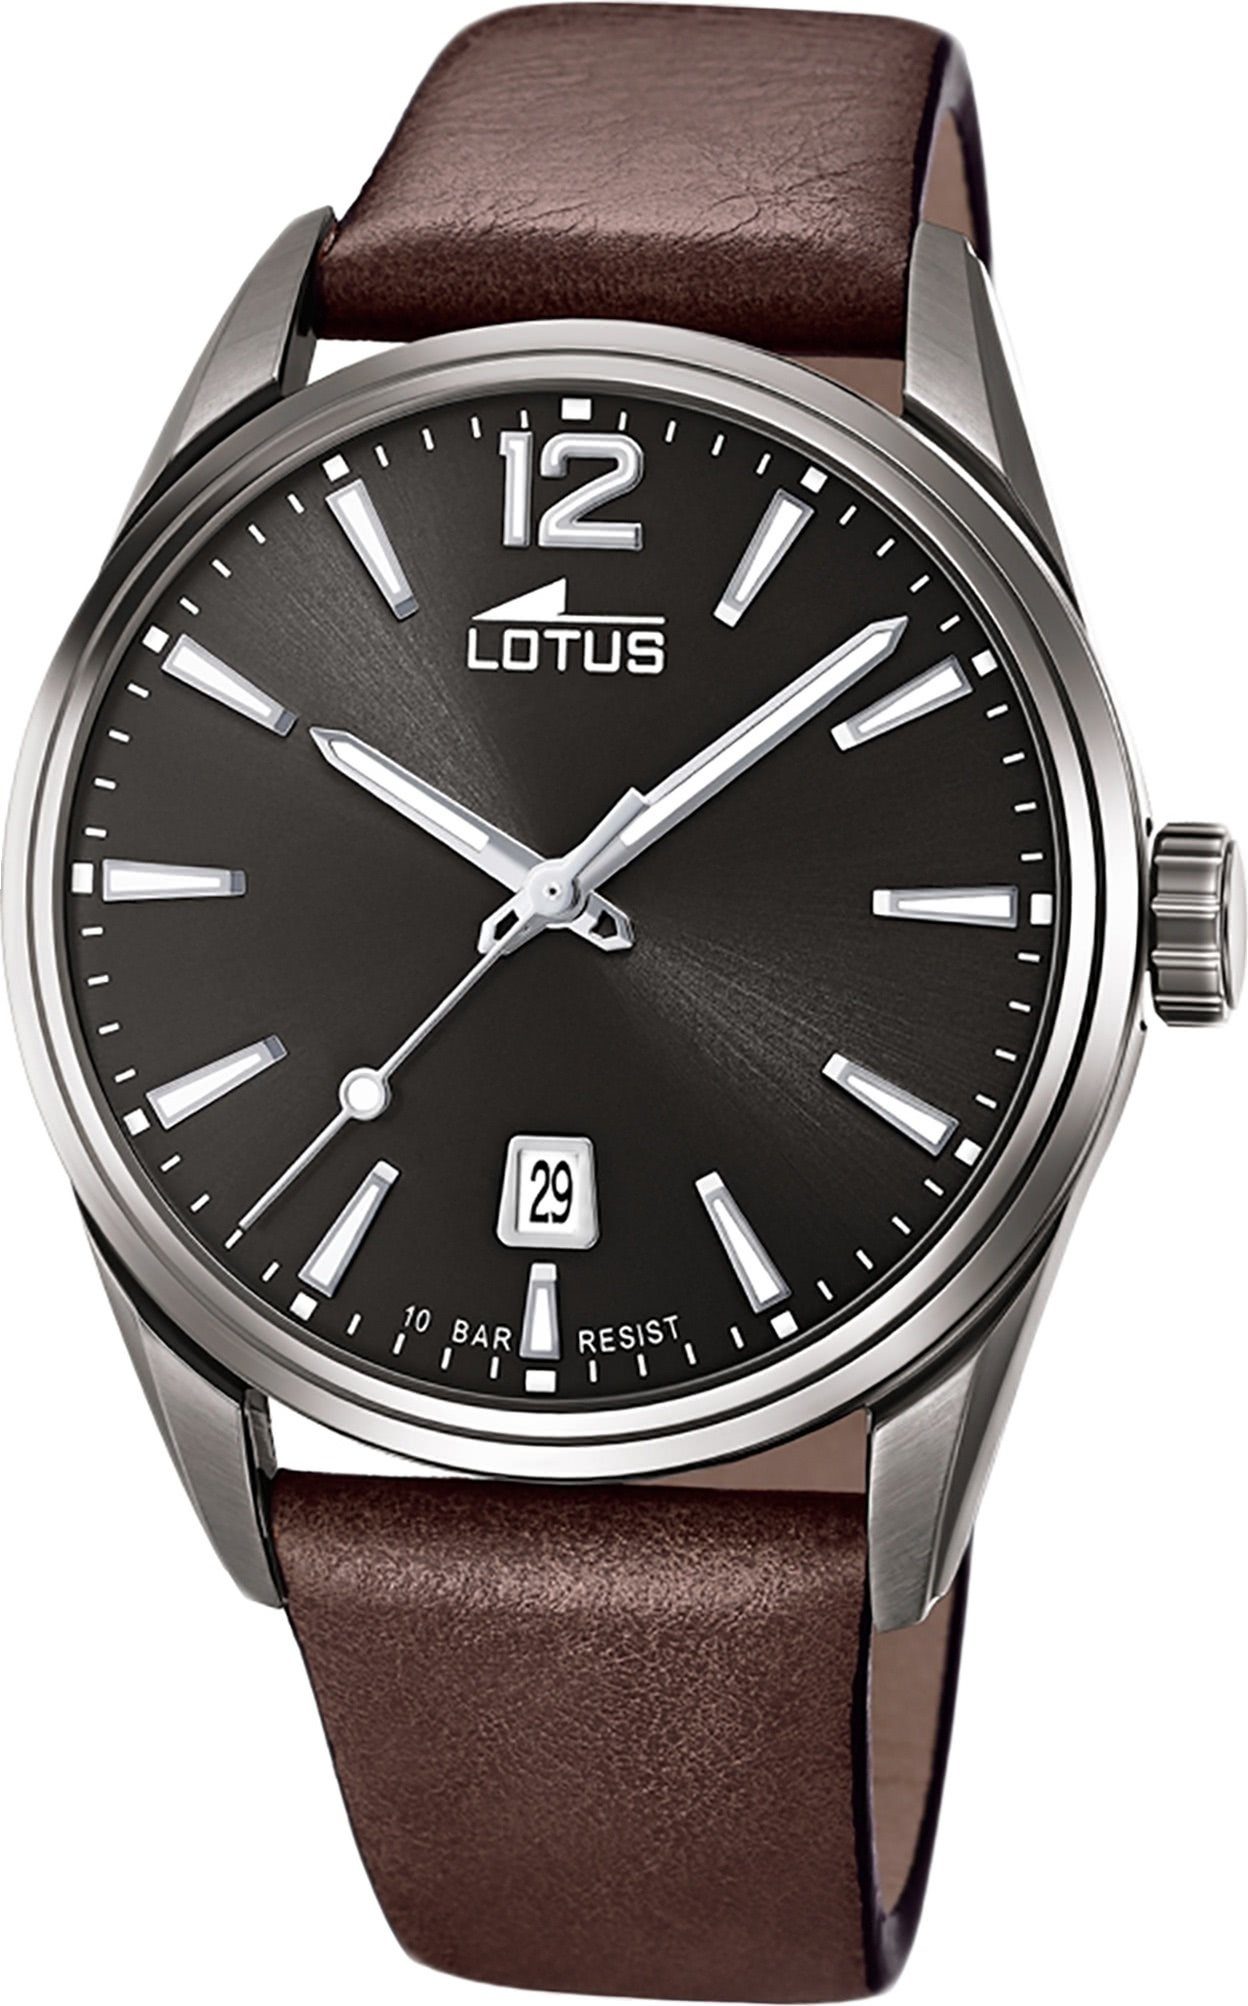 Beliebt 100 % Lotus Quarzuhr LOTUS Leder Herrenuhr groß 18685/1, mit (ca. Herren Sport-Sty Gehäuse, rundes 42mm), Uhr Lederarmband